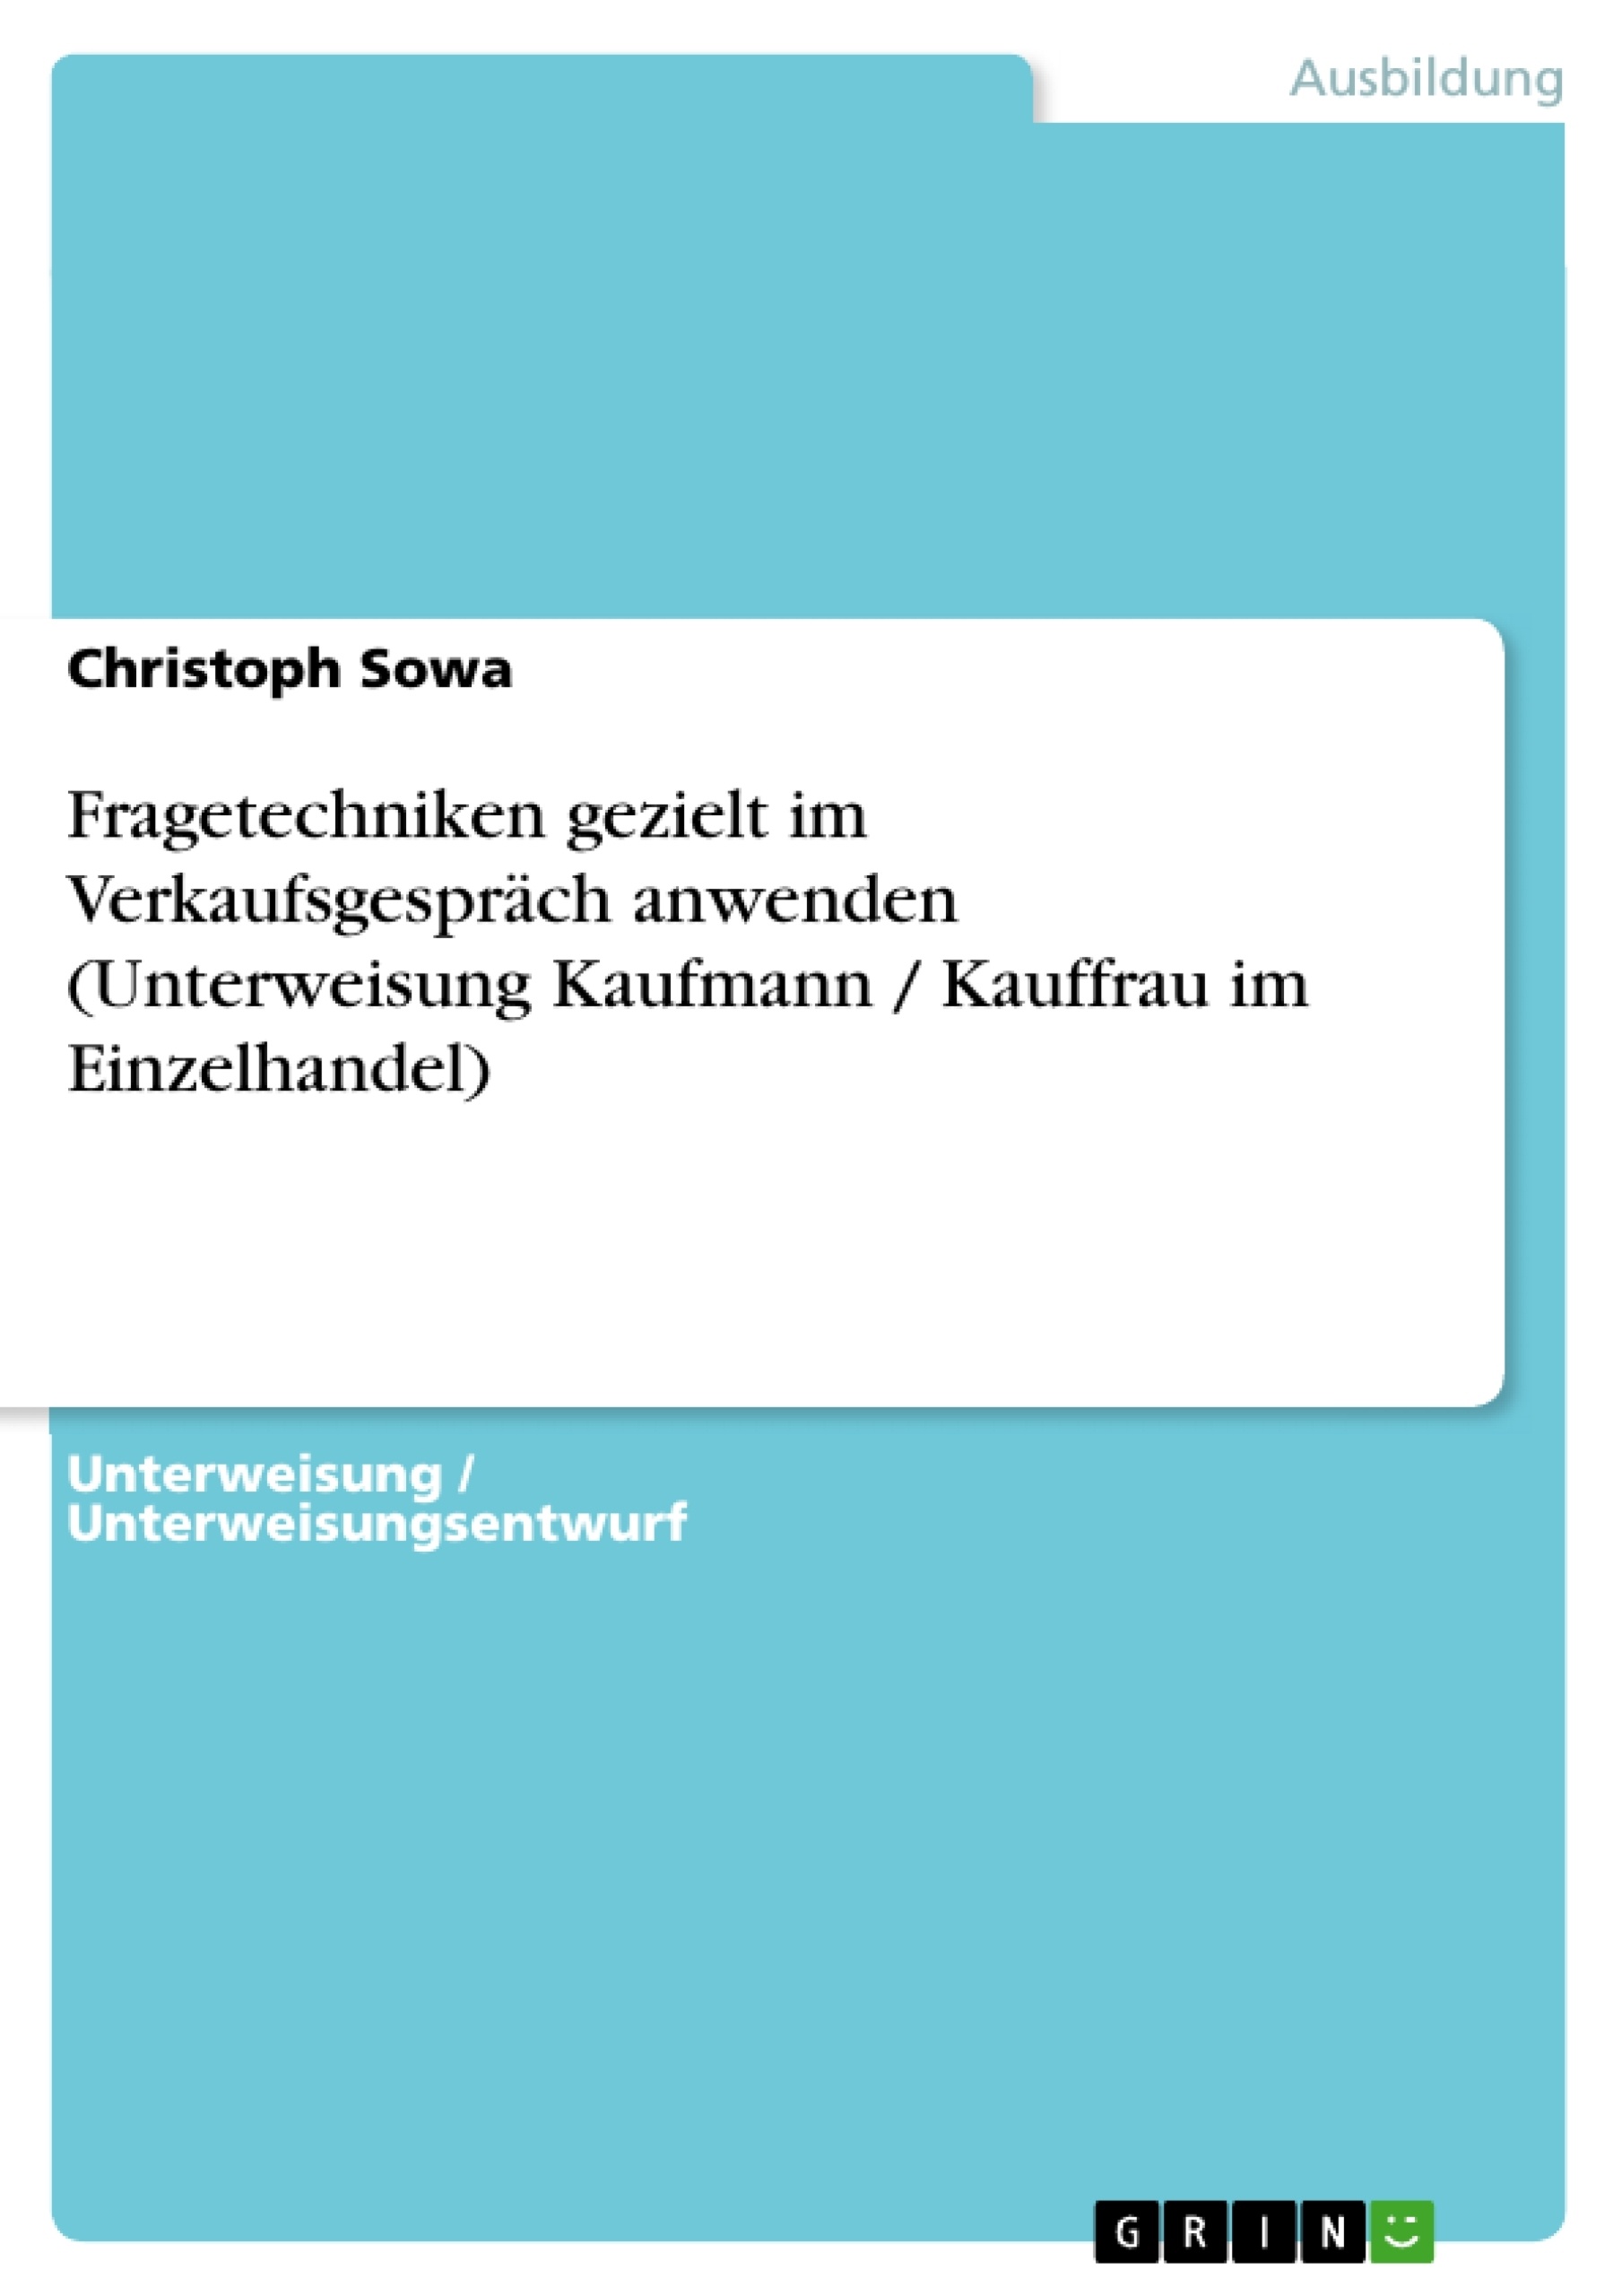 Título: Fragetechniken gezielt im Verkaufsgespräch anwenden (Unterweisung Kaufmann / Kauffrau im Einzelhandel)